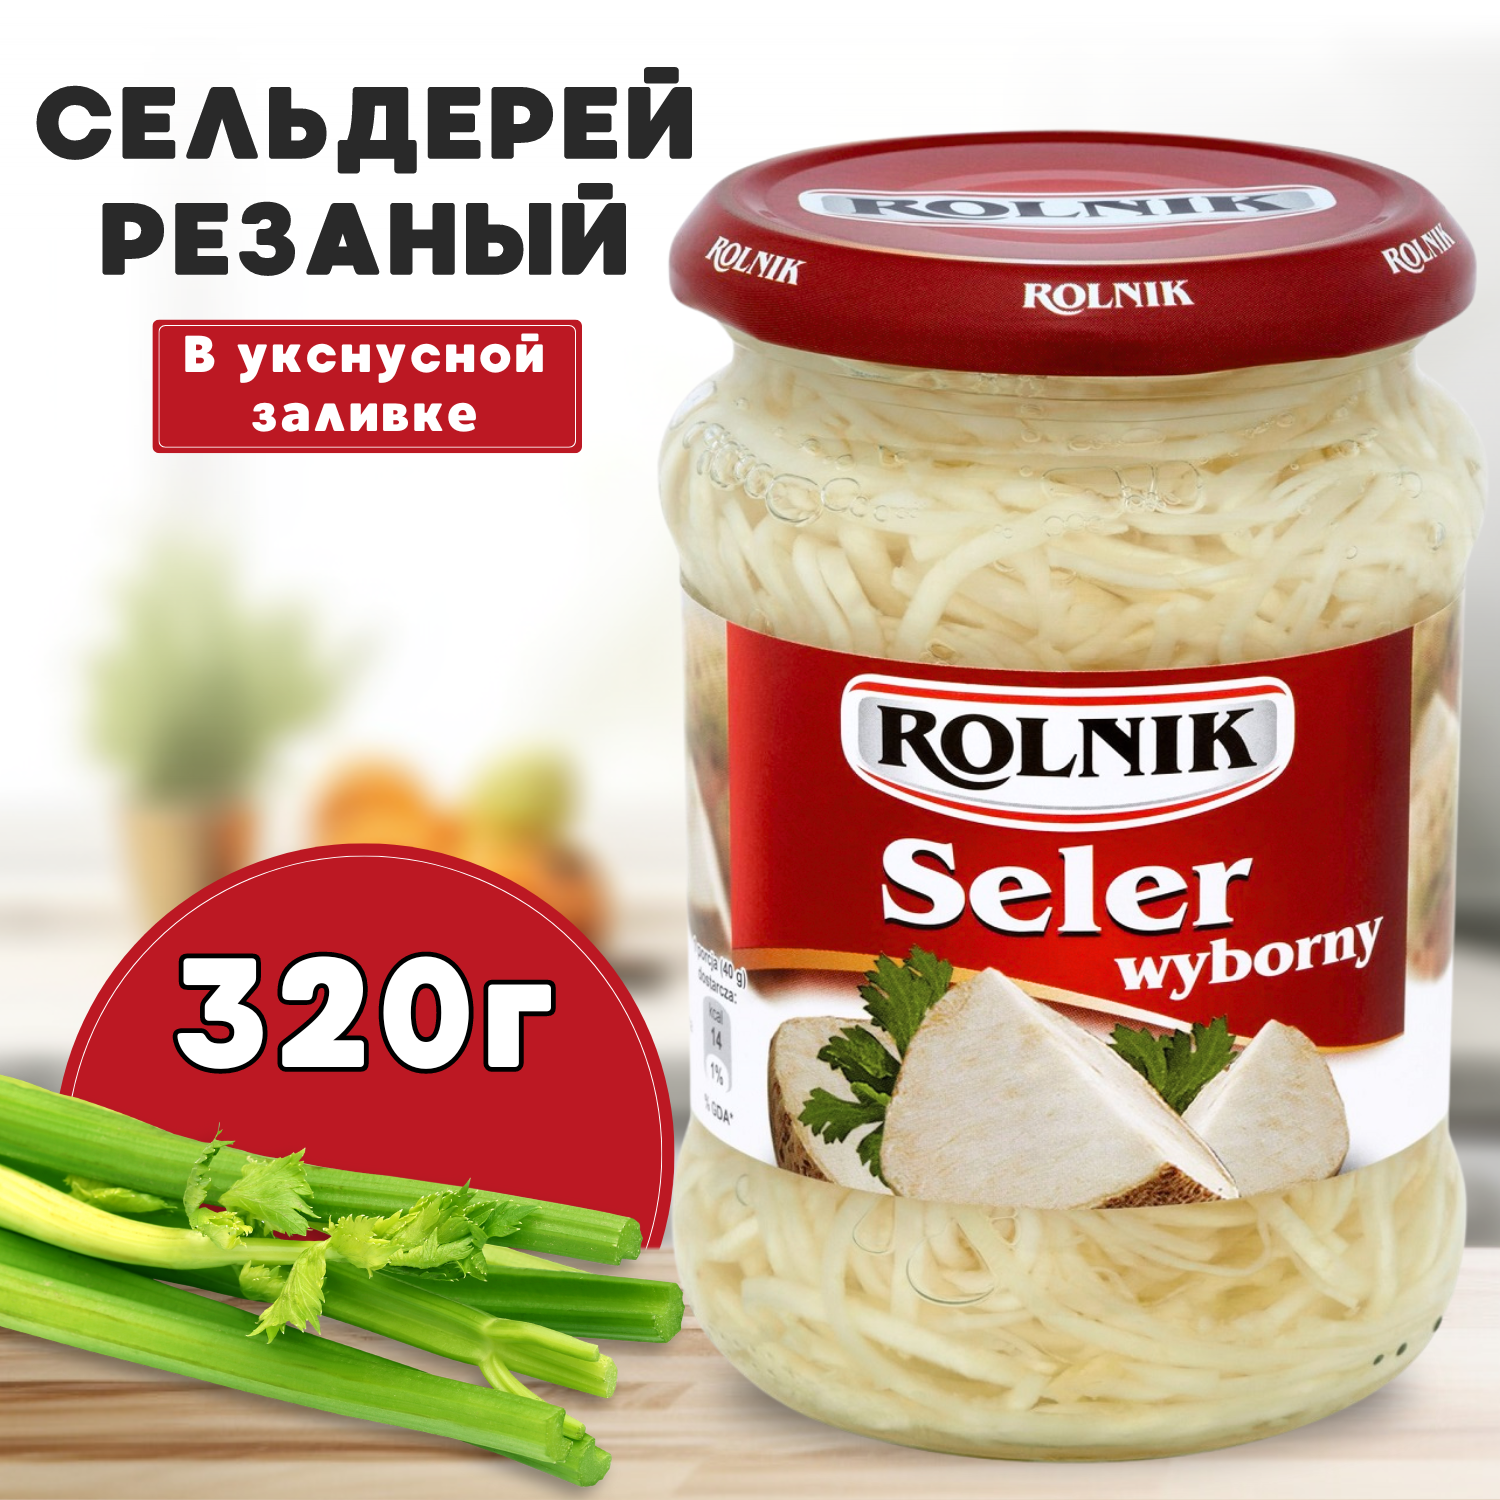 Салат из сельдерея резанного в уксусной заливке, Rolnik, 320 г.